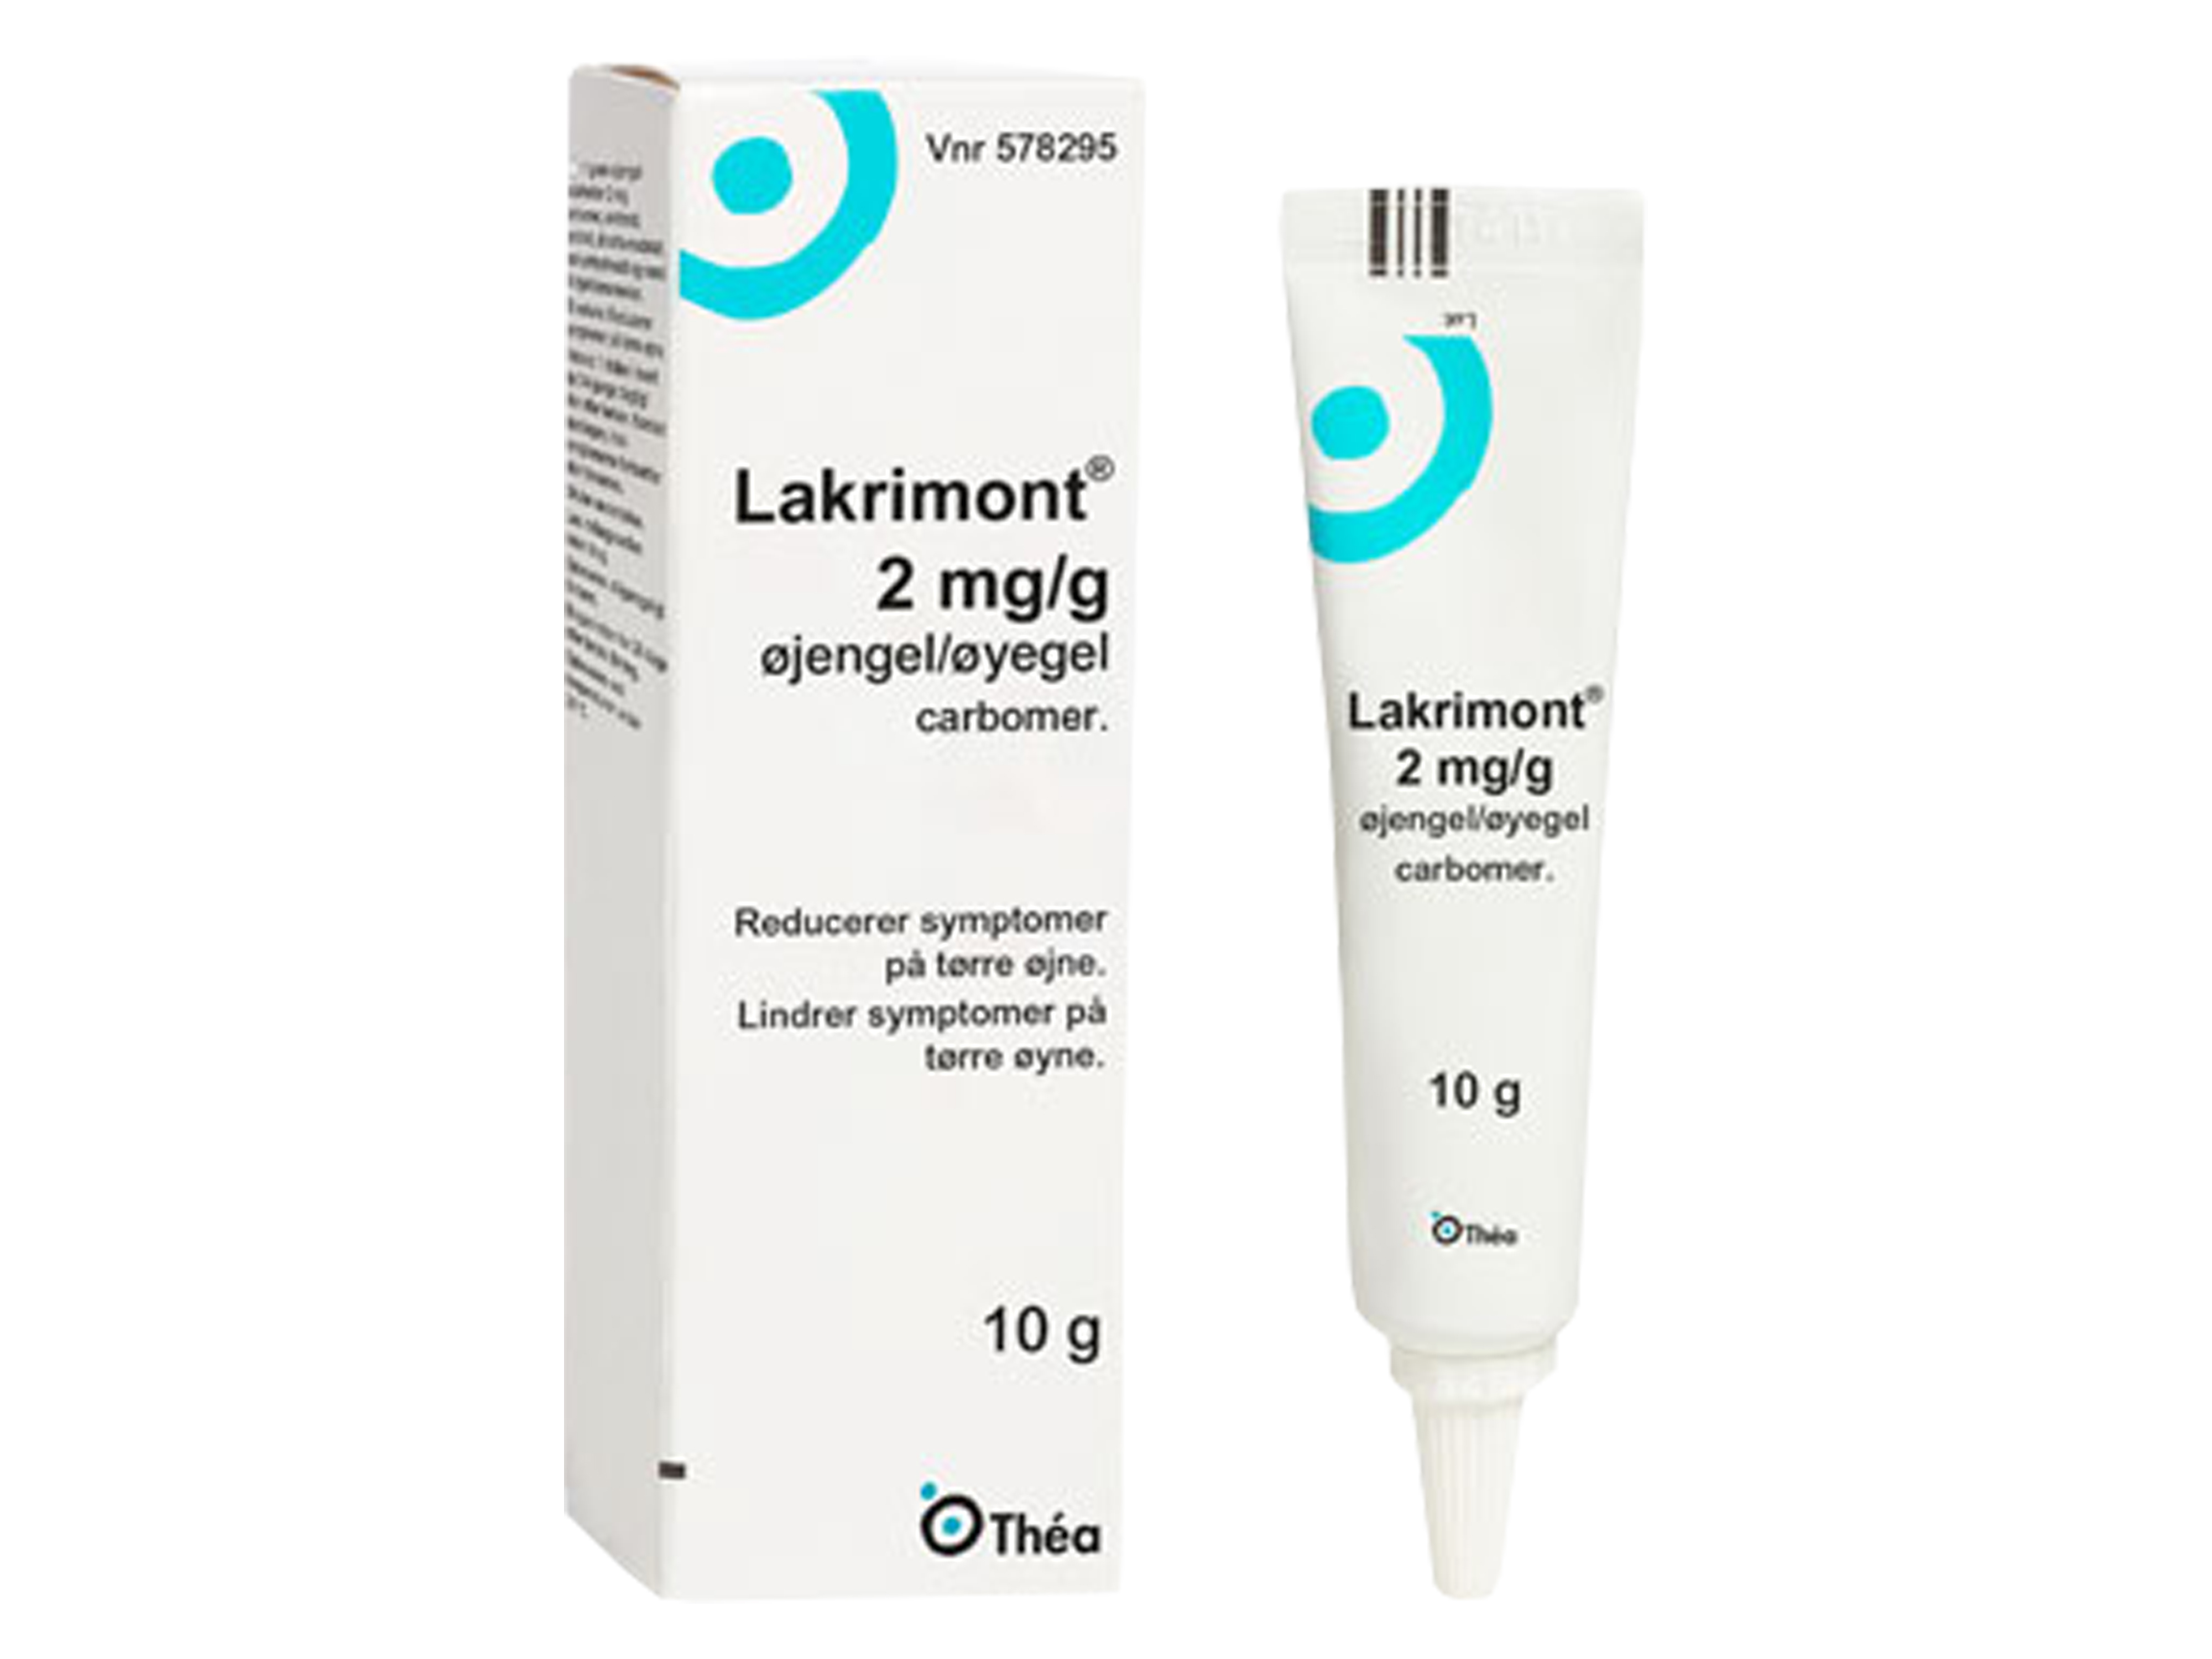 Lakrimont Øyegel 2mg/g for tørre øyne, 10 g.